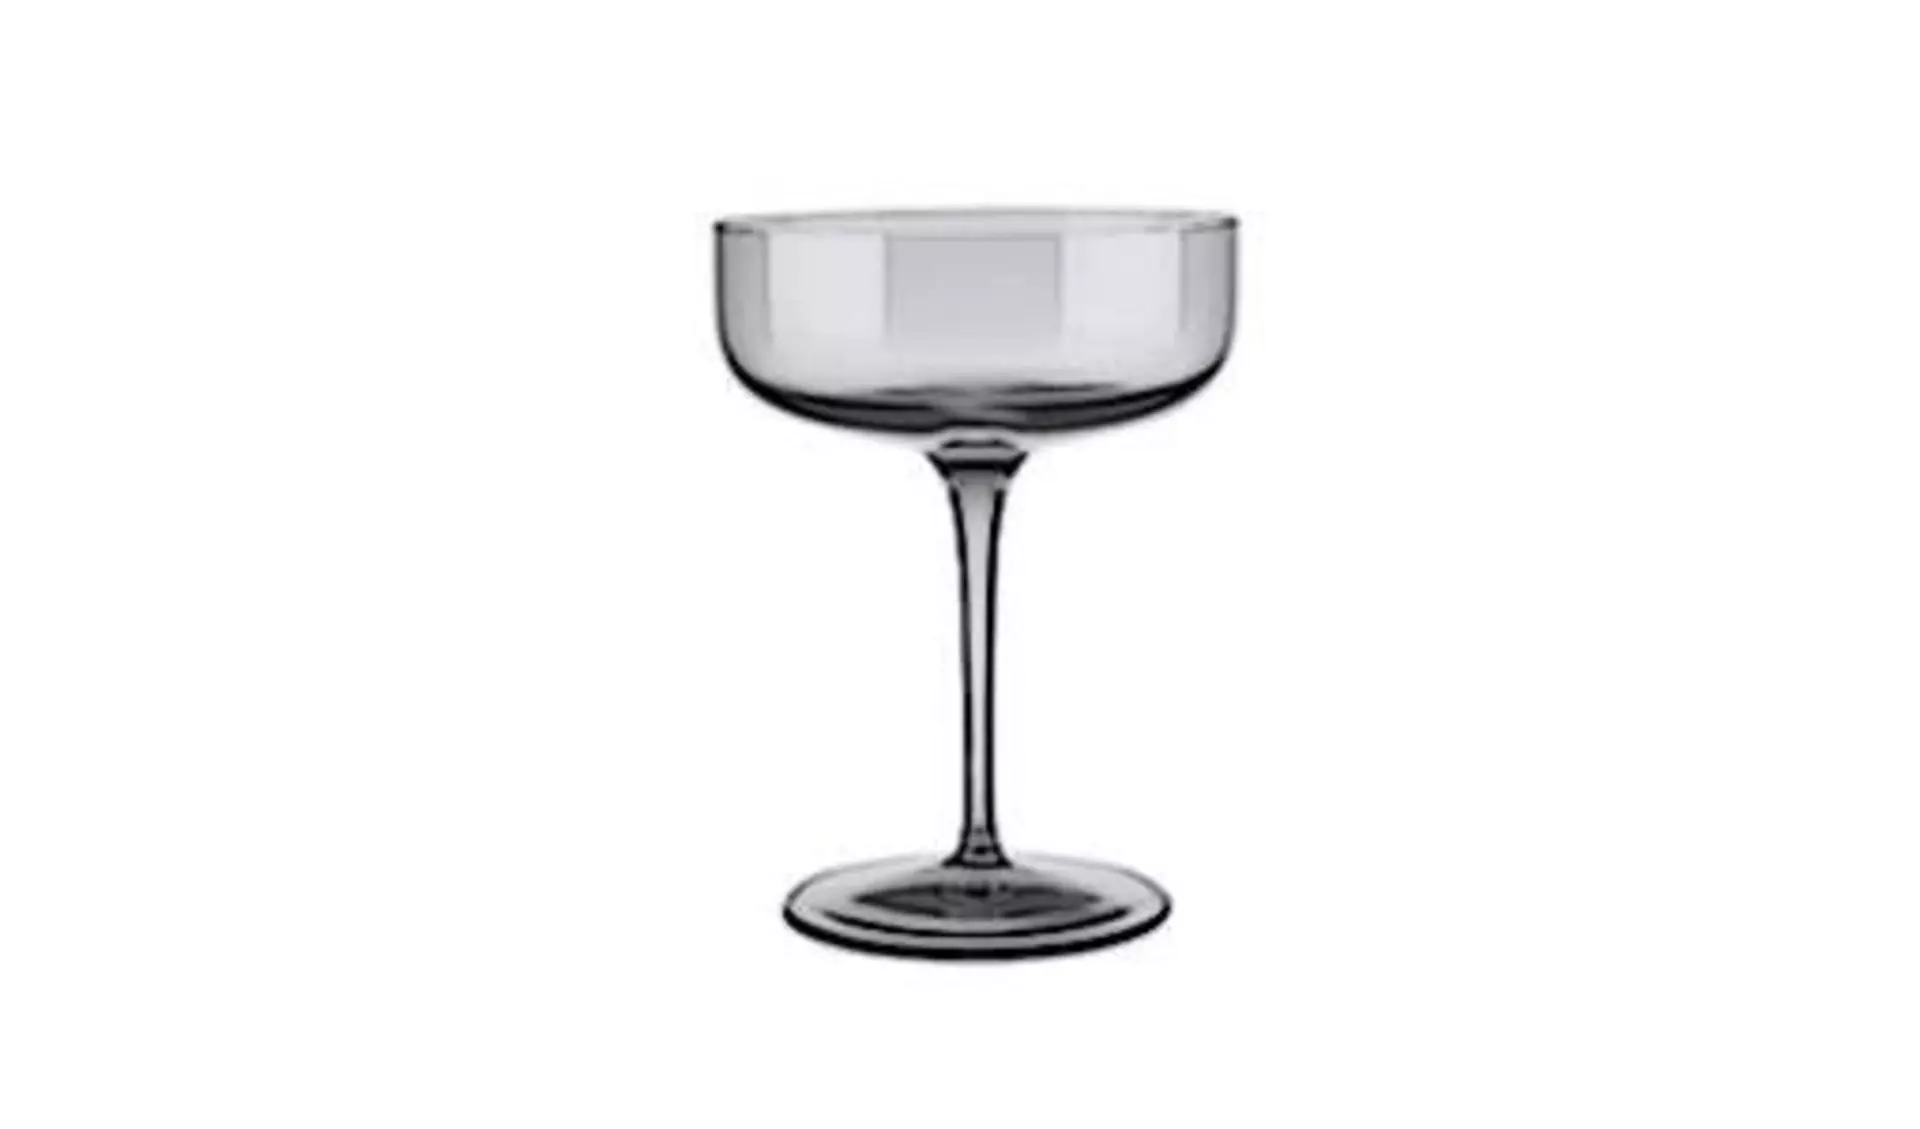 Cocktailglas mit niedrigem am breiten Trinkglas auf einem langen Stiel. Das für Margeritas typische Cocktailglas steht als Icon für alle Produkte dieser Klasse.